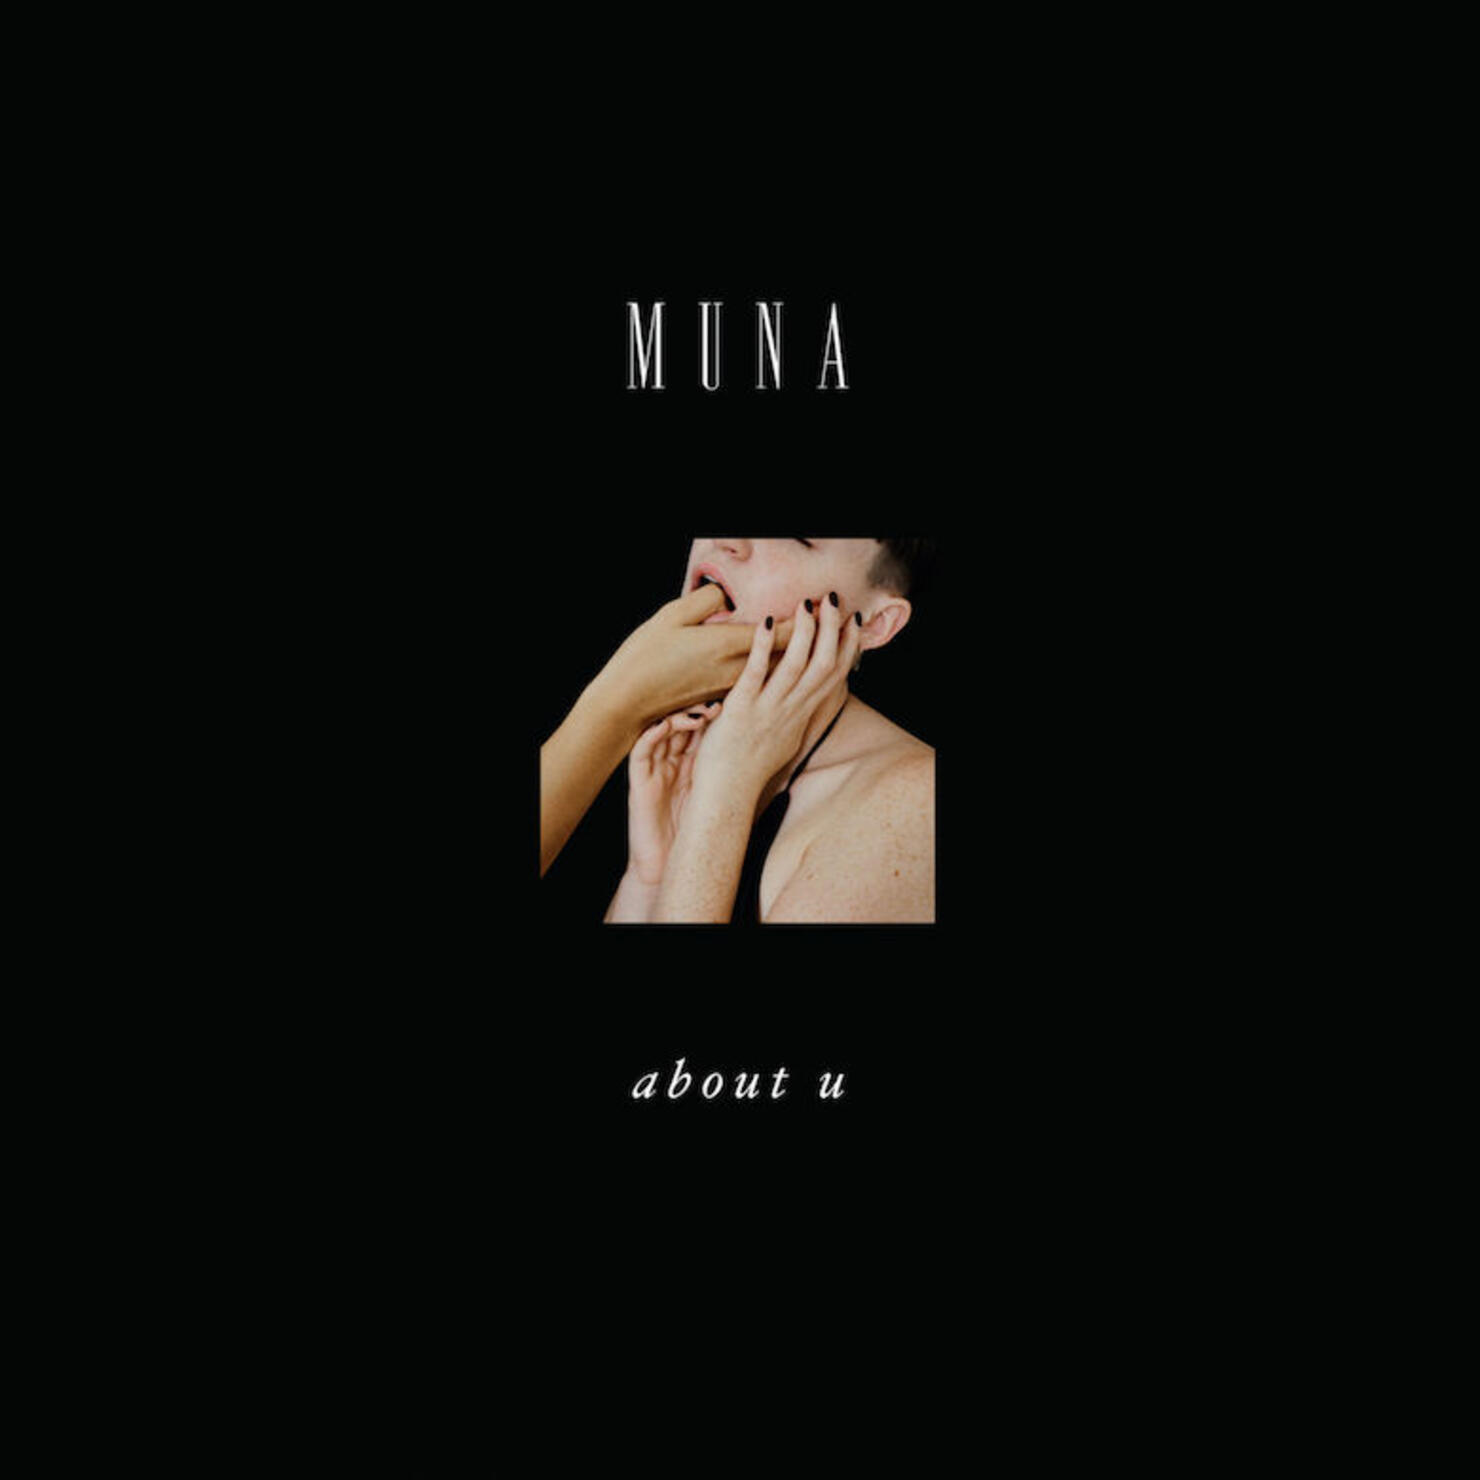 MUNA 'About U' Album Cover Art